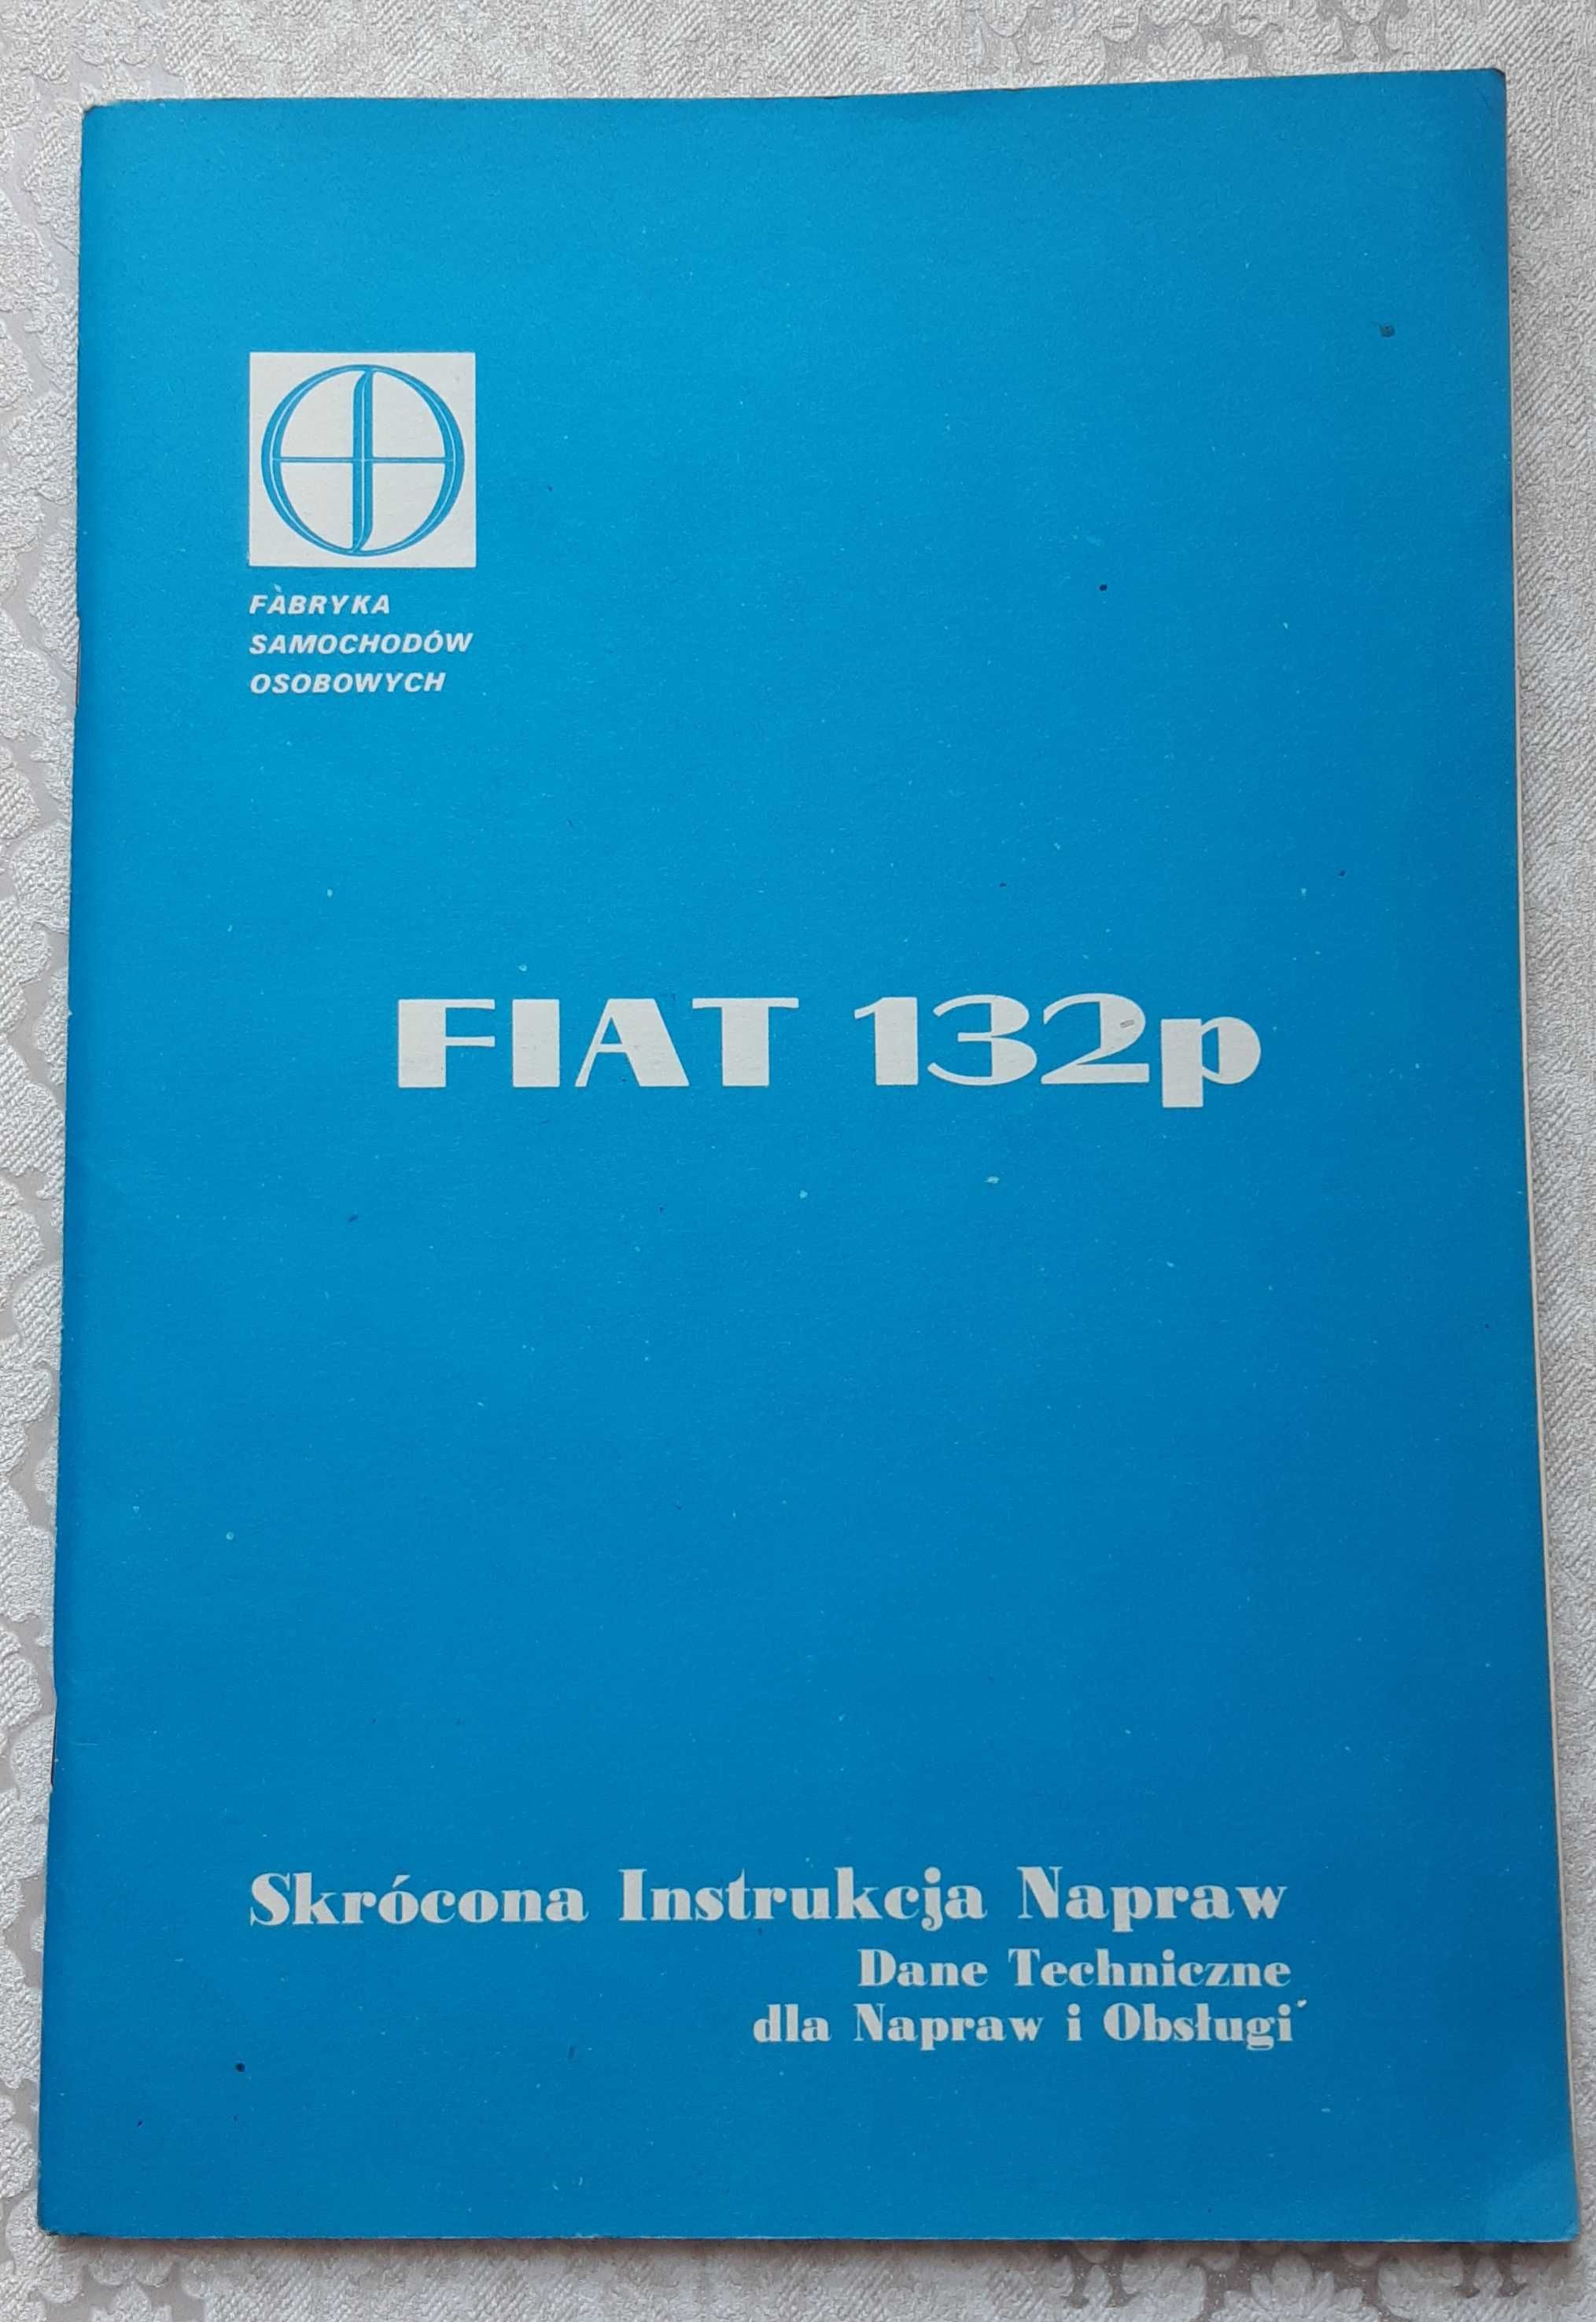 FSO Fiat 132p skrócona instrukcja napraw